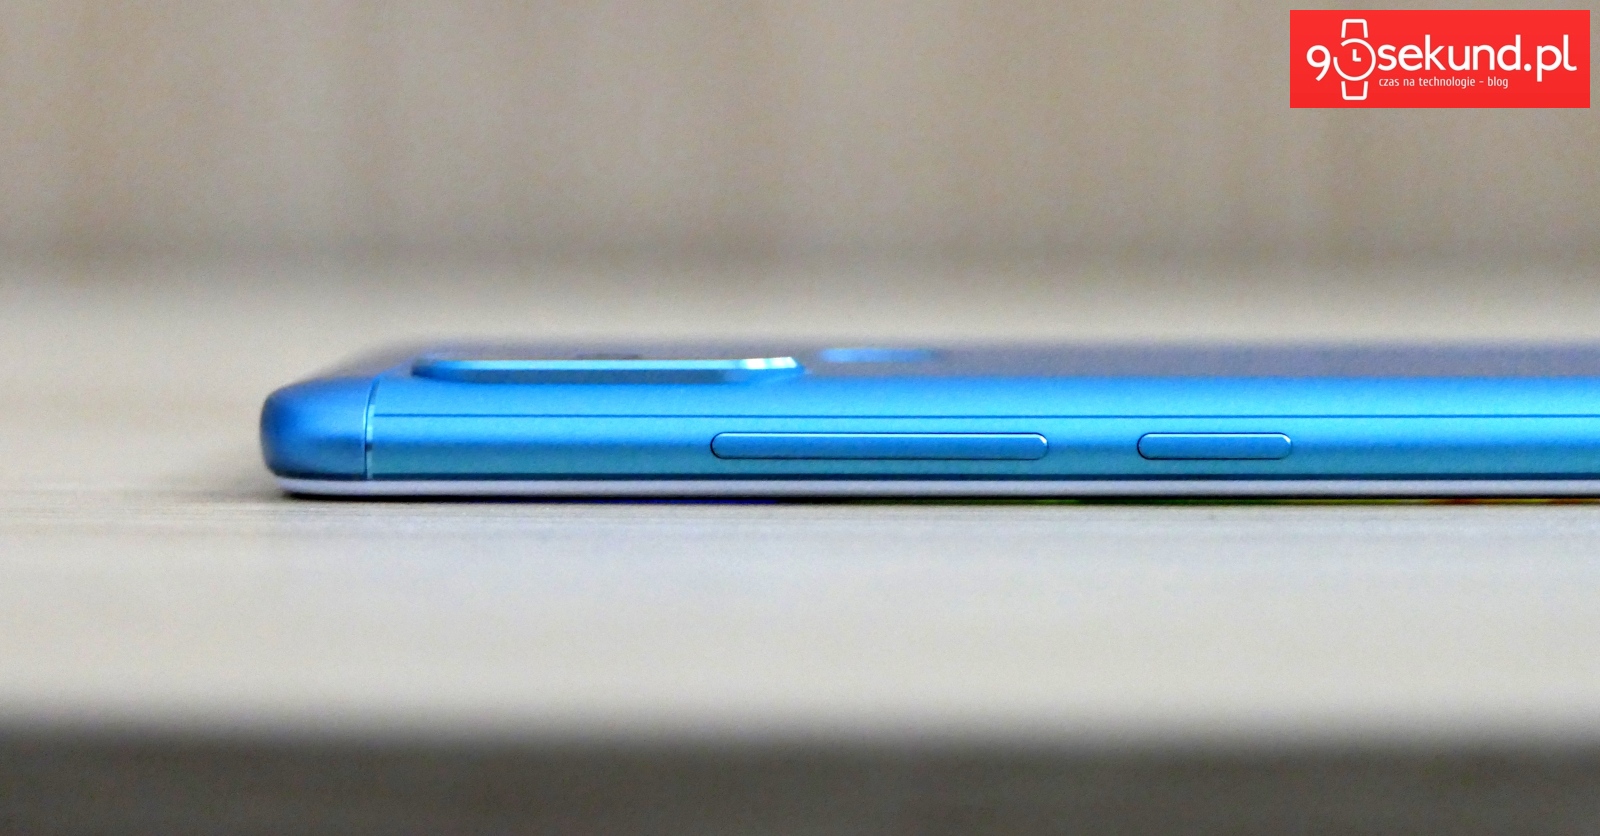 Recenzja Xiaomi Redmi Note 5 - 90sekund.pl / Michał Brożyński